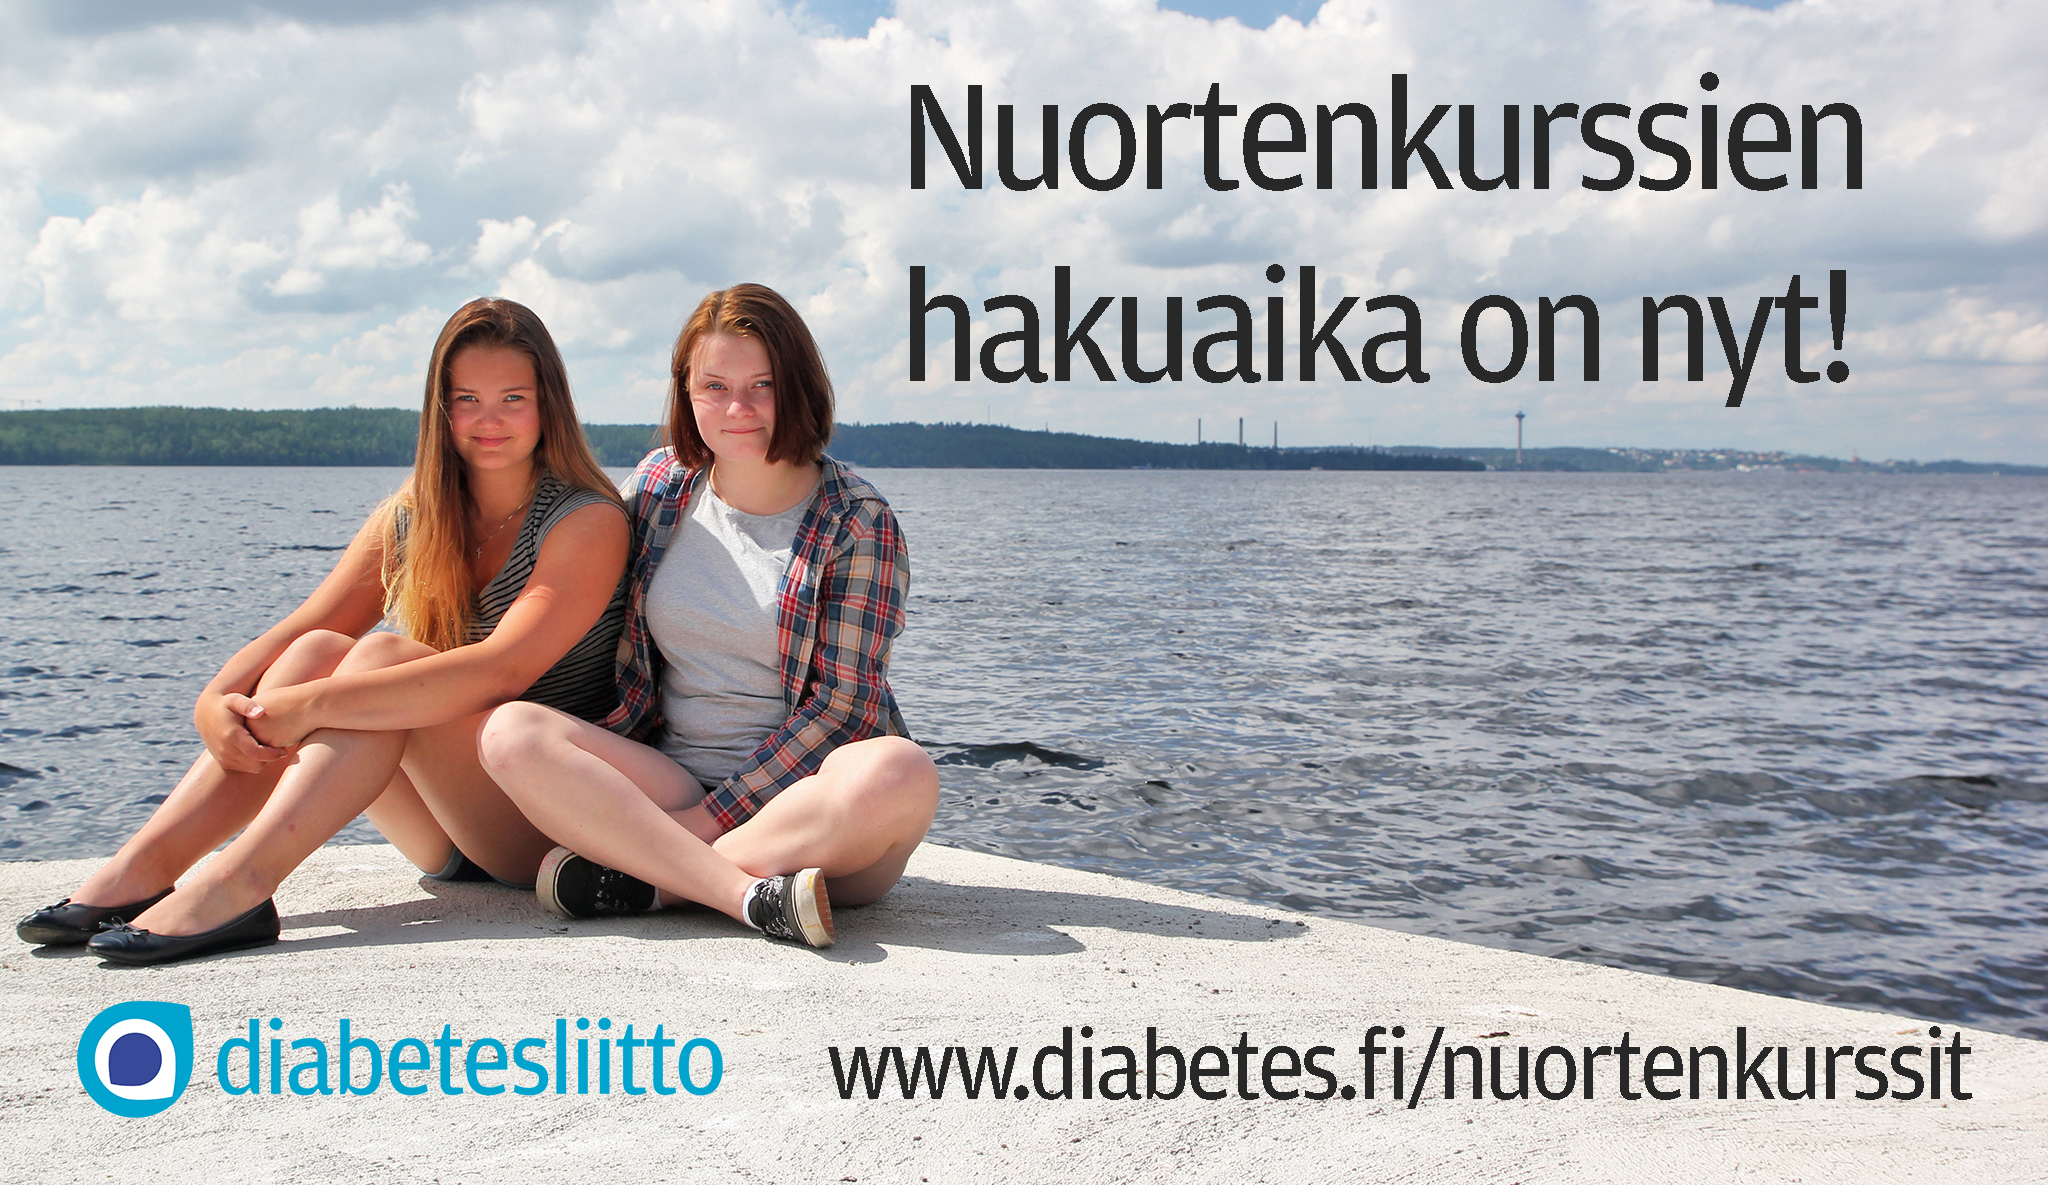 Diabeteskurssilla tapaa nuoria, joilla on samanlainen elämäntyyli